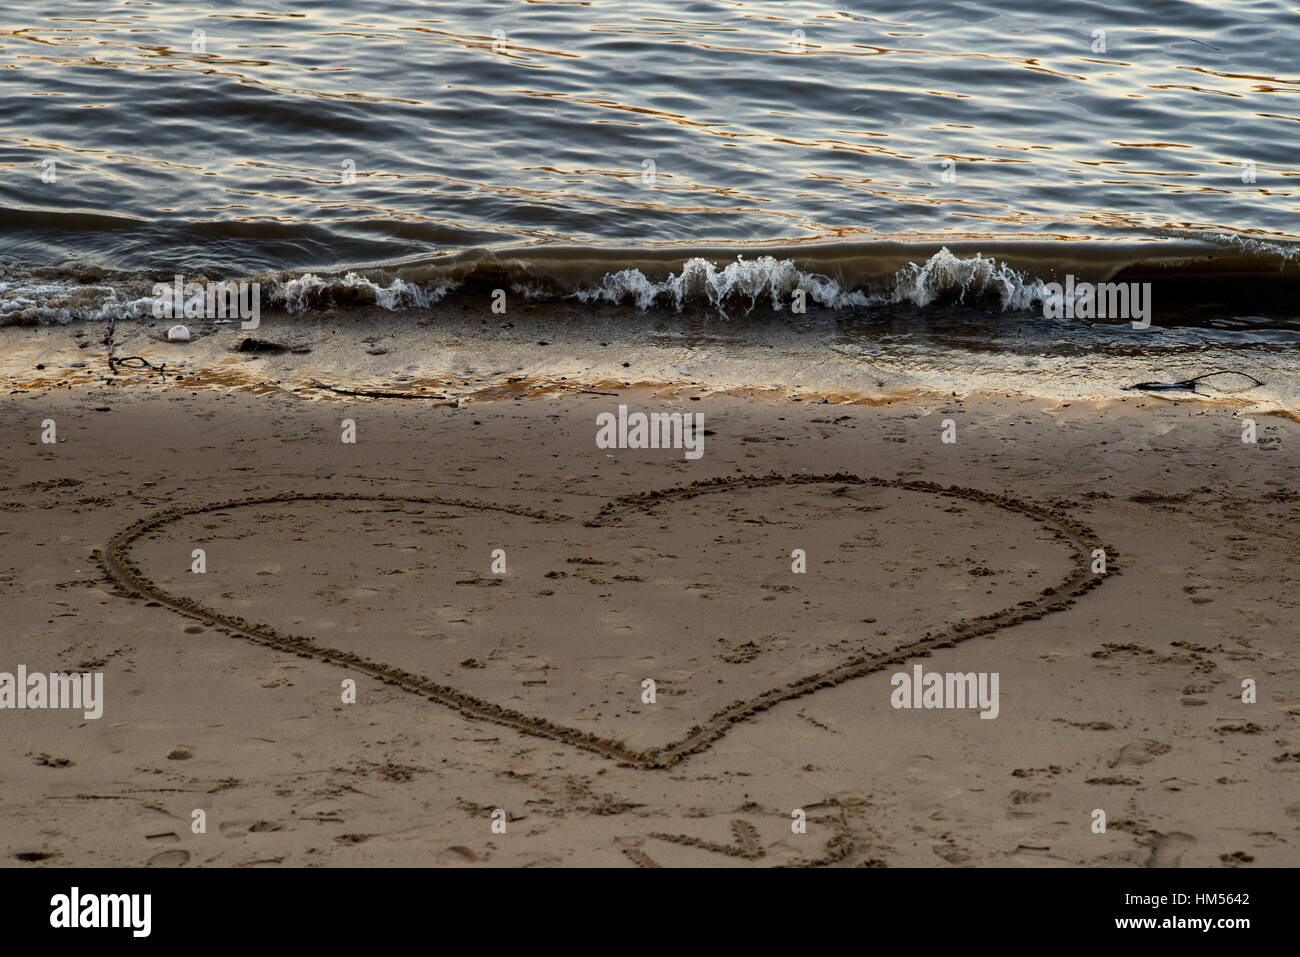 Forme de coeur dessiné dans le sable sur une plage. Londres, Grande-Bretagne Banque D'Images